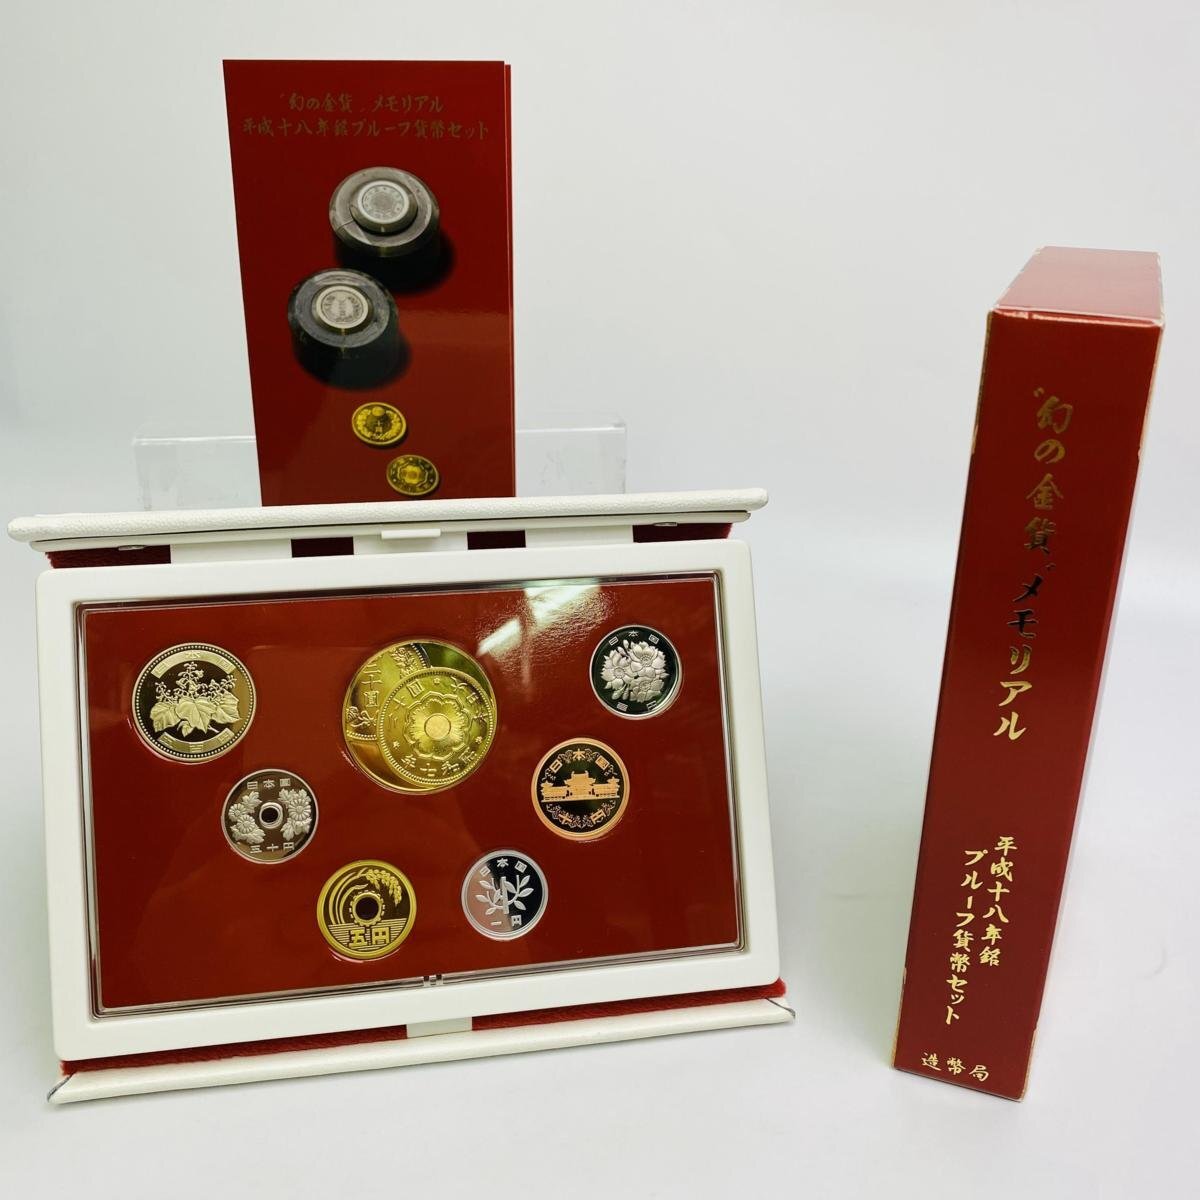 2006年(平成18年) 幻の金貨 メモリアル 記念 プルーフ 貨幣セット 額面合計666円 銀約20g 美品 硬貨未使用 造幣局 同梱可の画像1